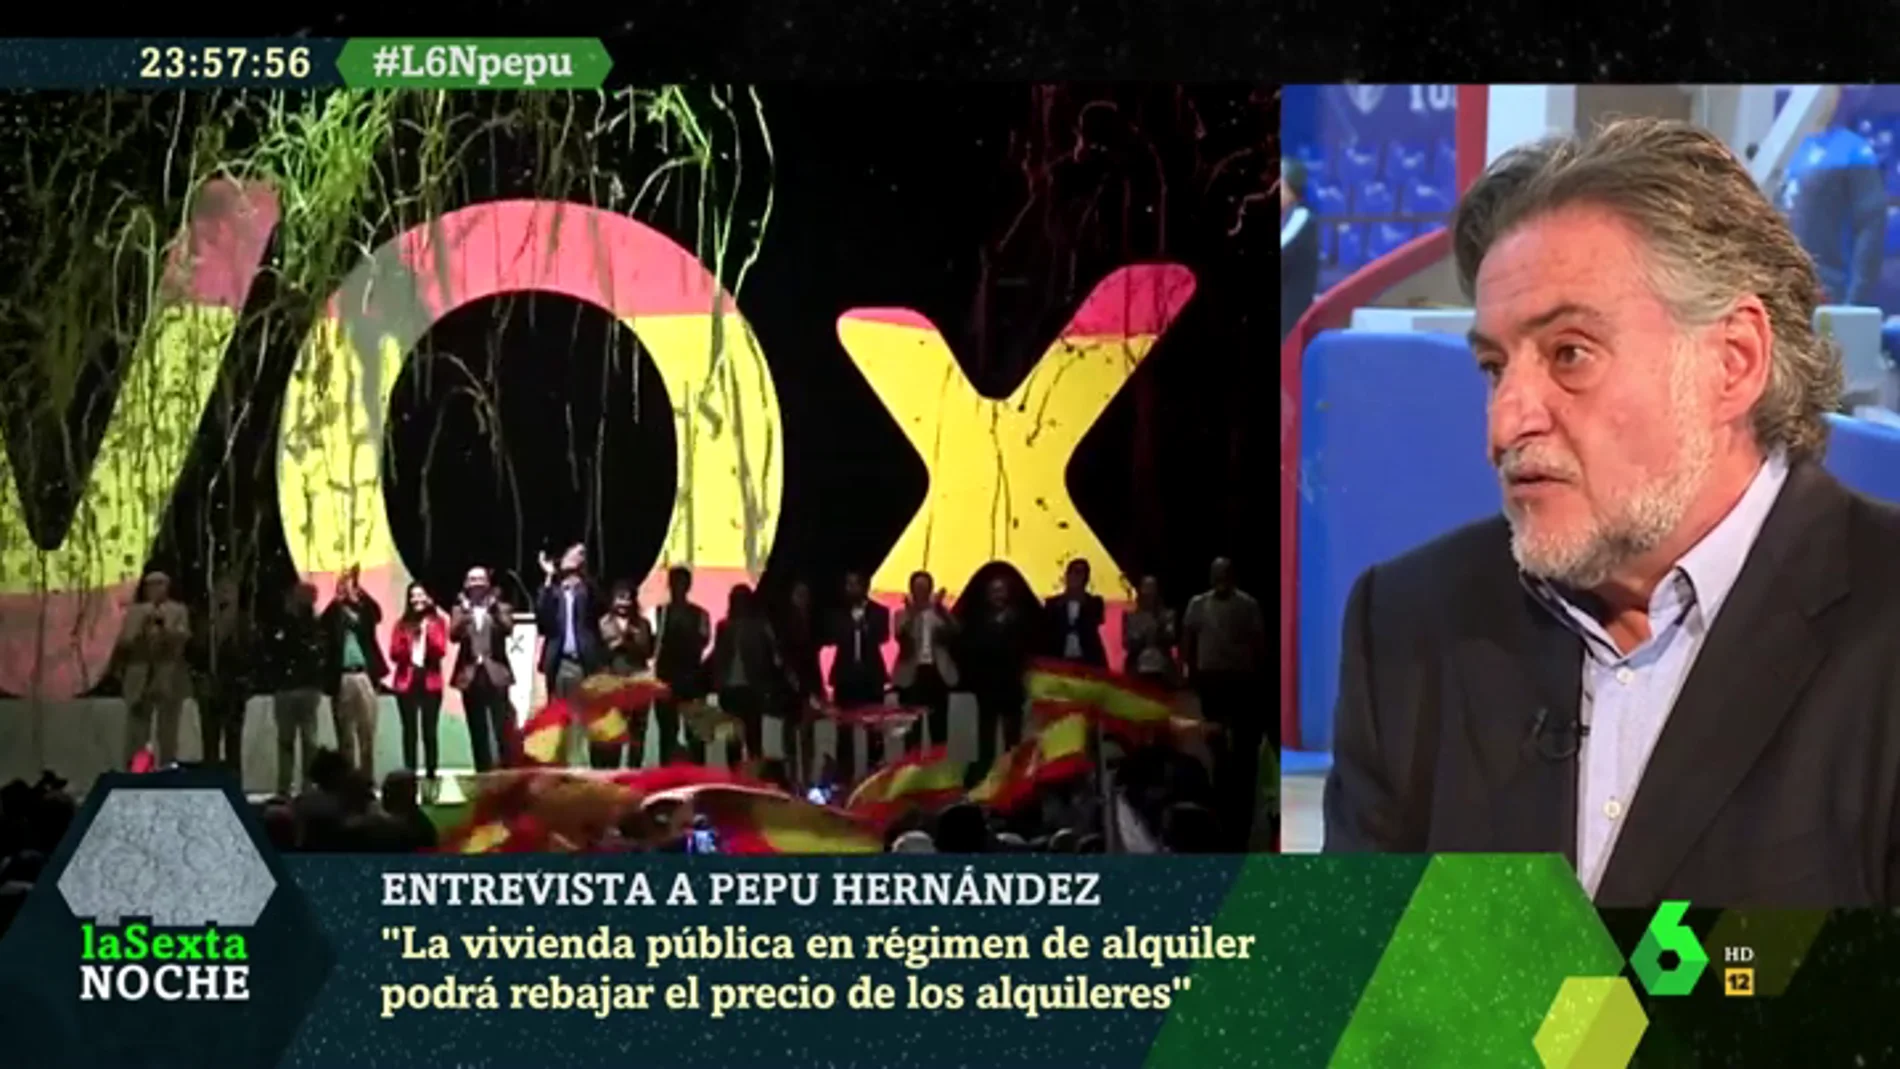 Pepu Hernández lanza una advertencia sobre Vox: "El pasado no puede formar parte de nuestro futuro"